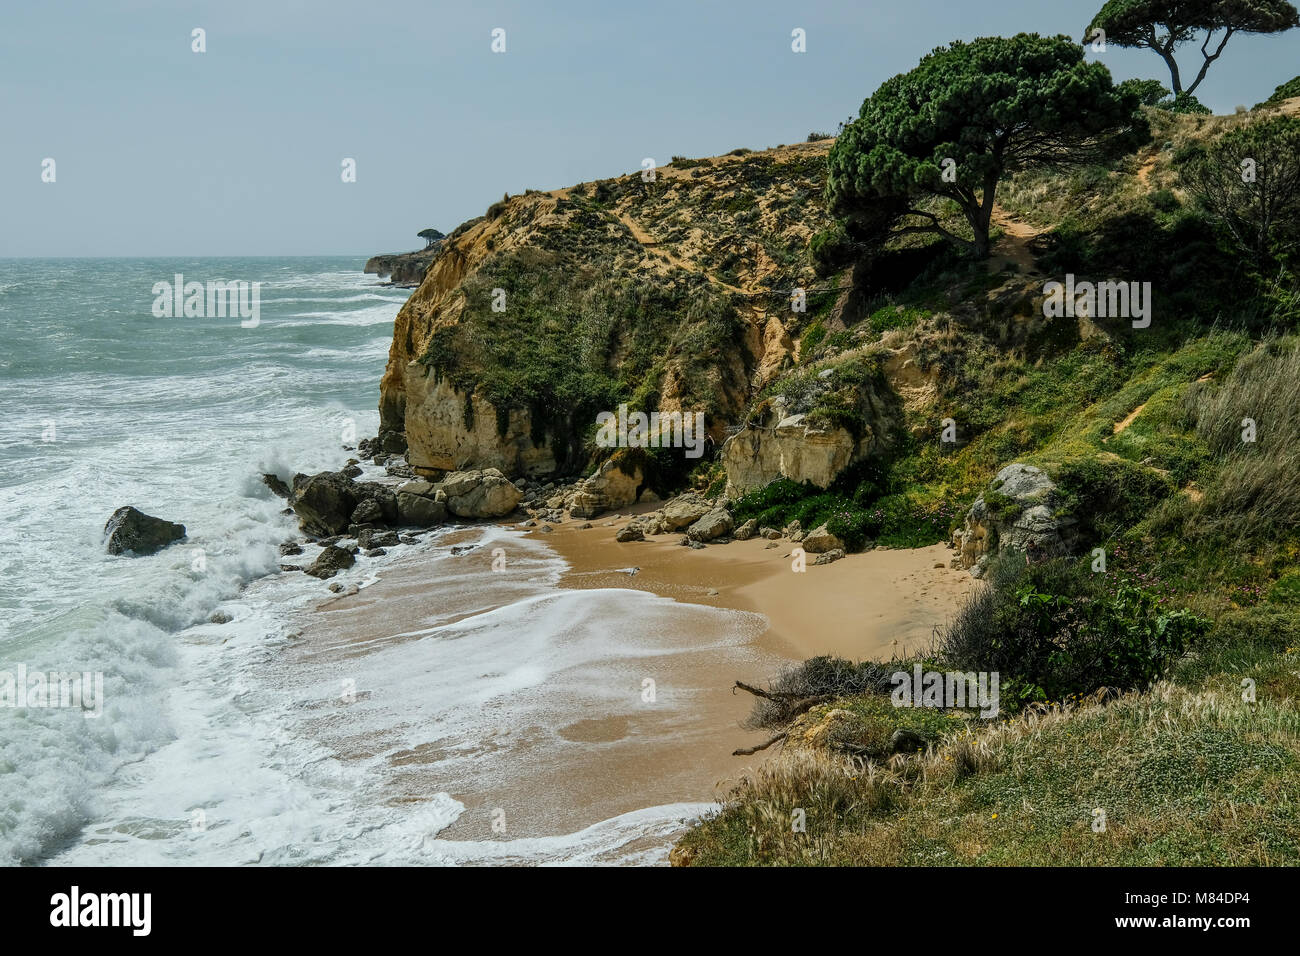 Blick auf die Landschaft mit Felsen und Dünen am Strand in der Nähe von Albufeira Portugal im Sommer mit lokalen Vegetation Blumen und Pflanzen Stockfoto